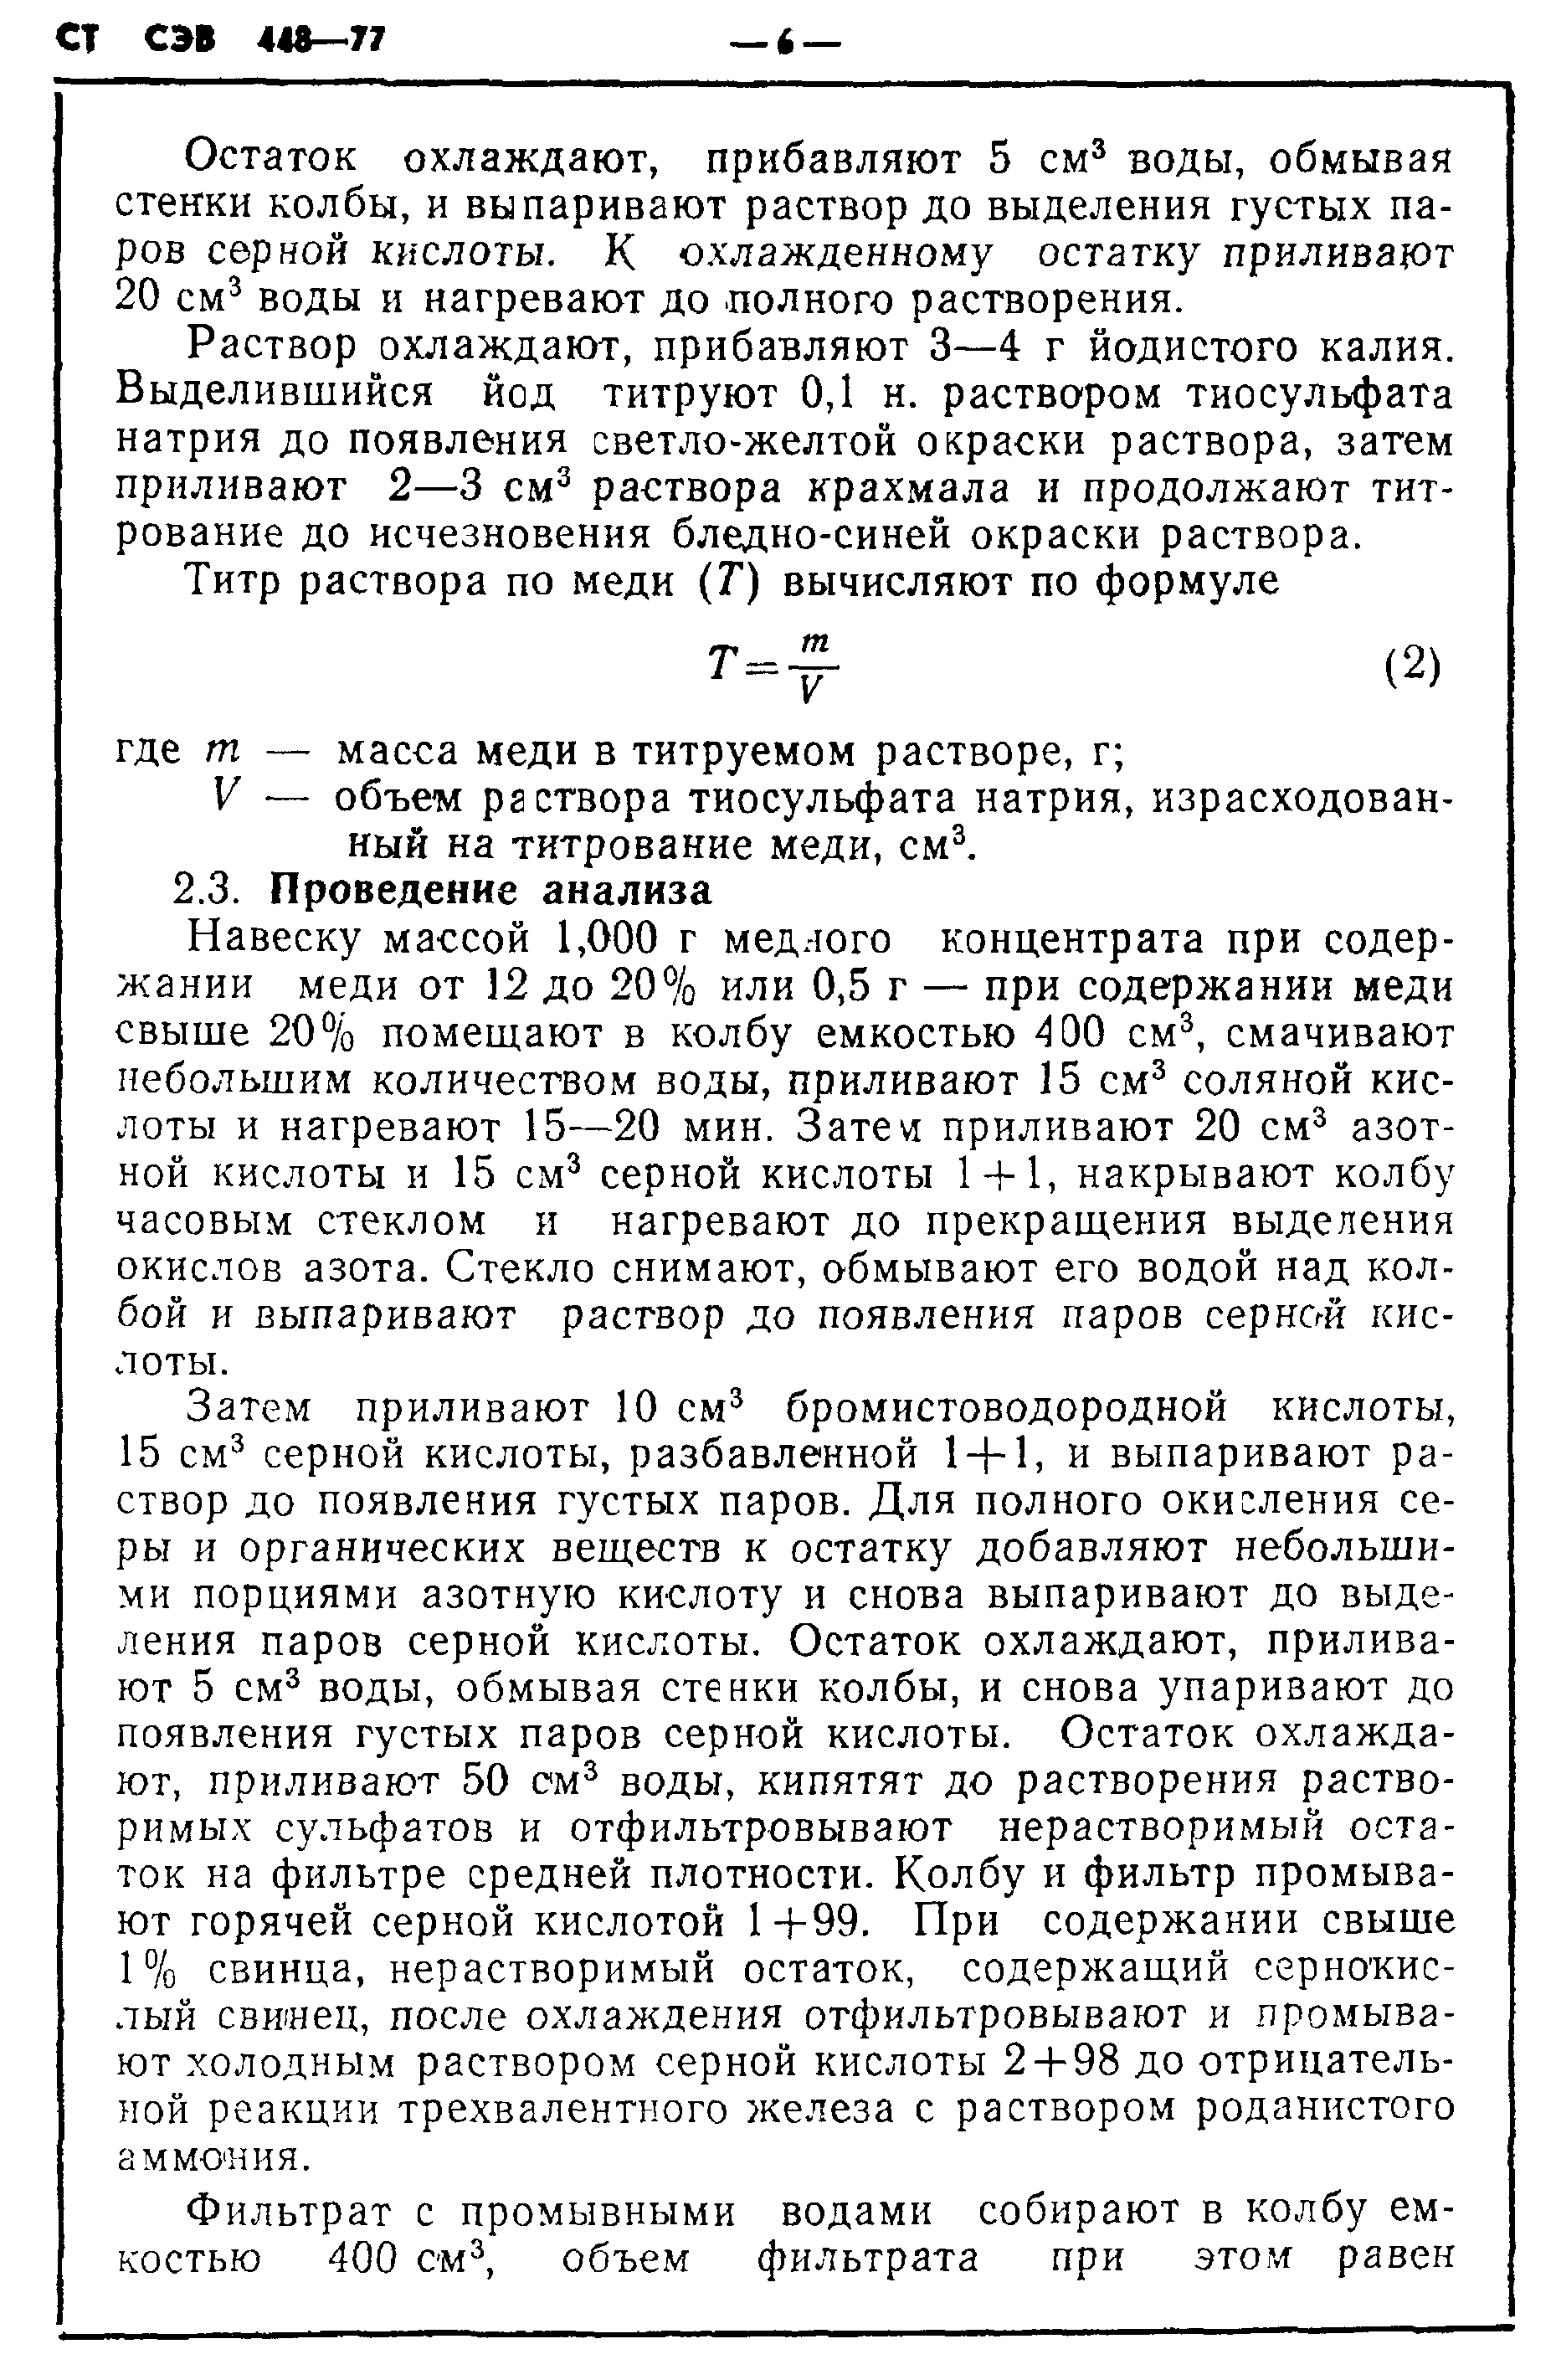 СТ СЭВ 448-77